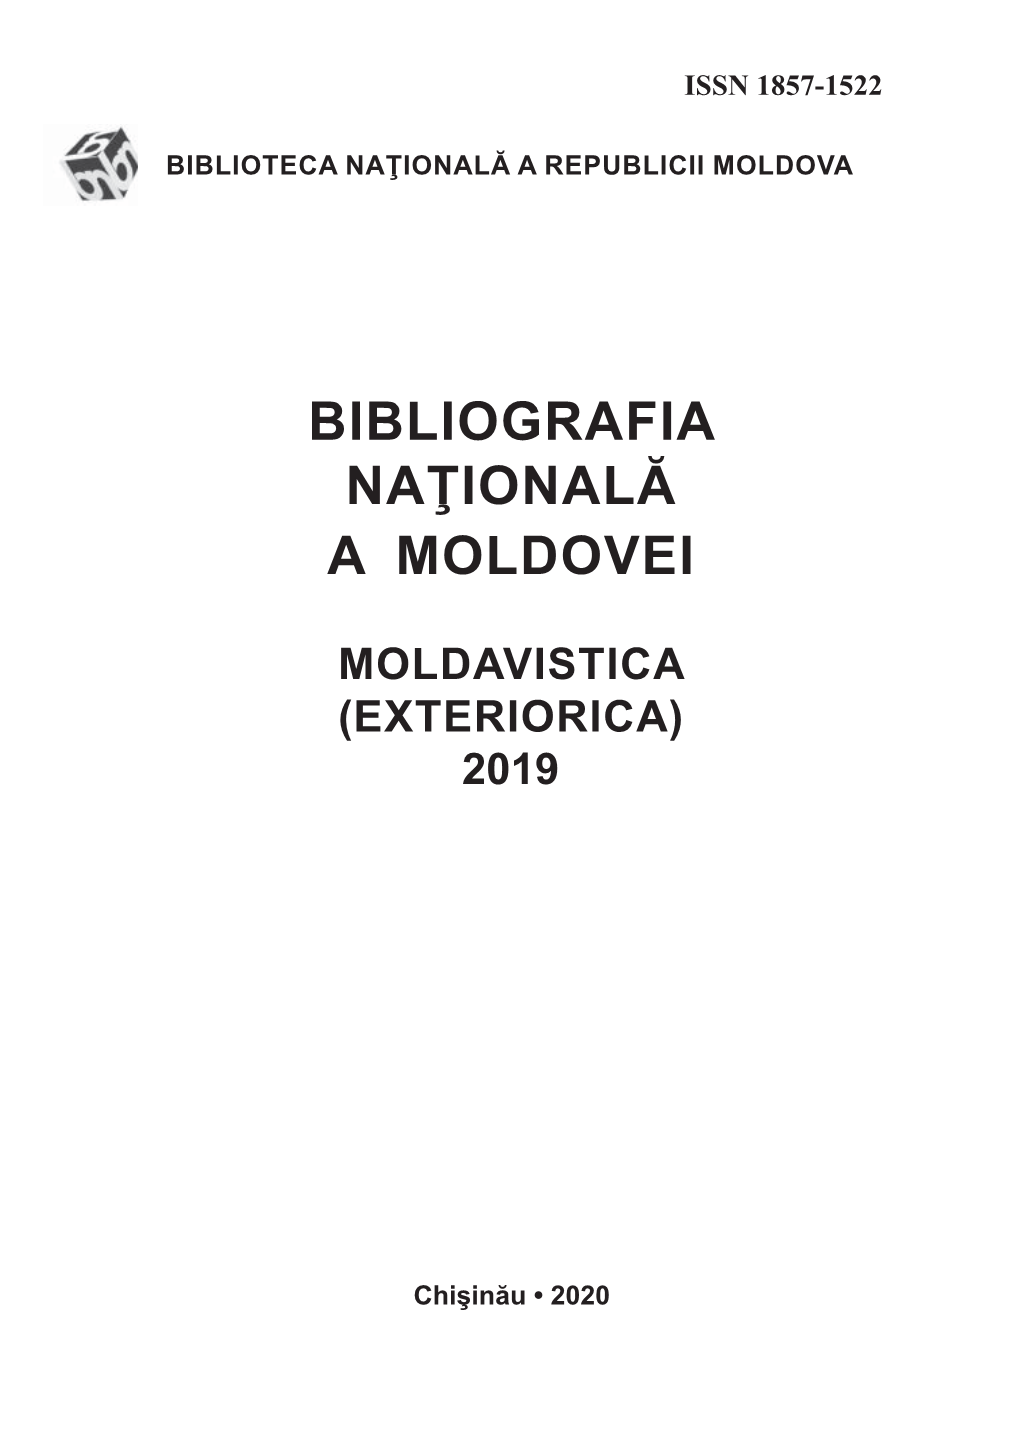 Moldavistica (Exteriorica) 2019